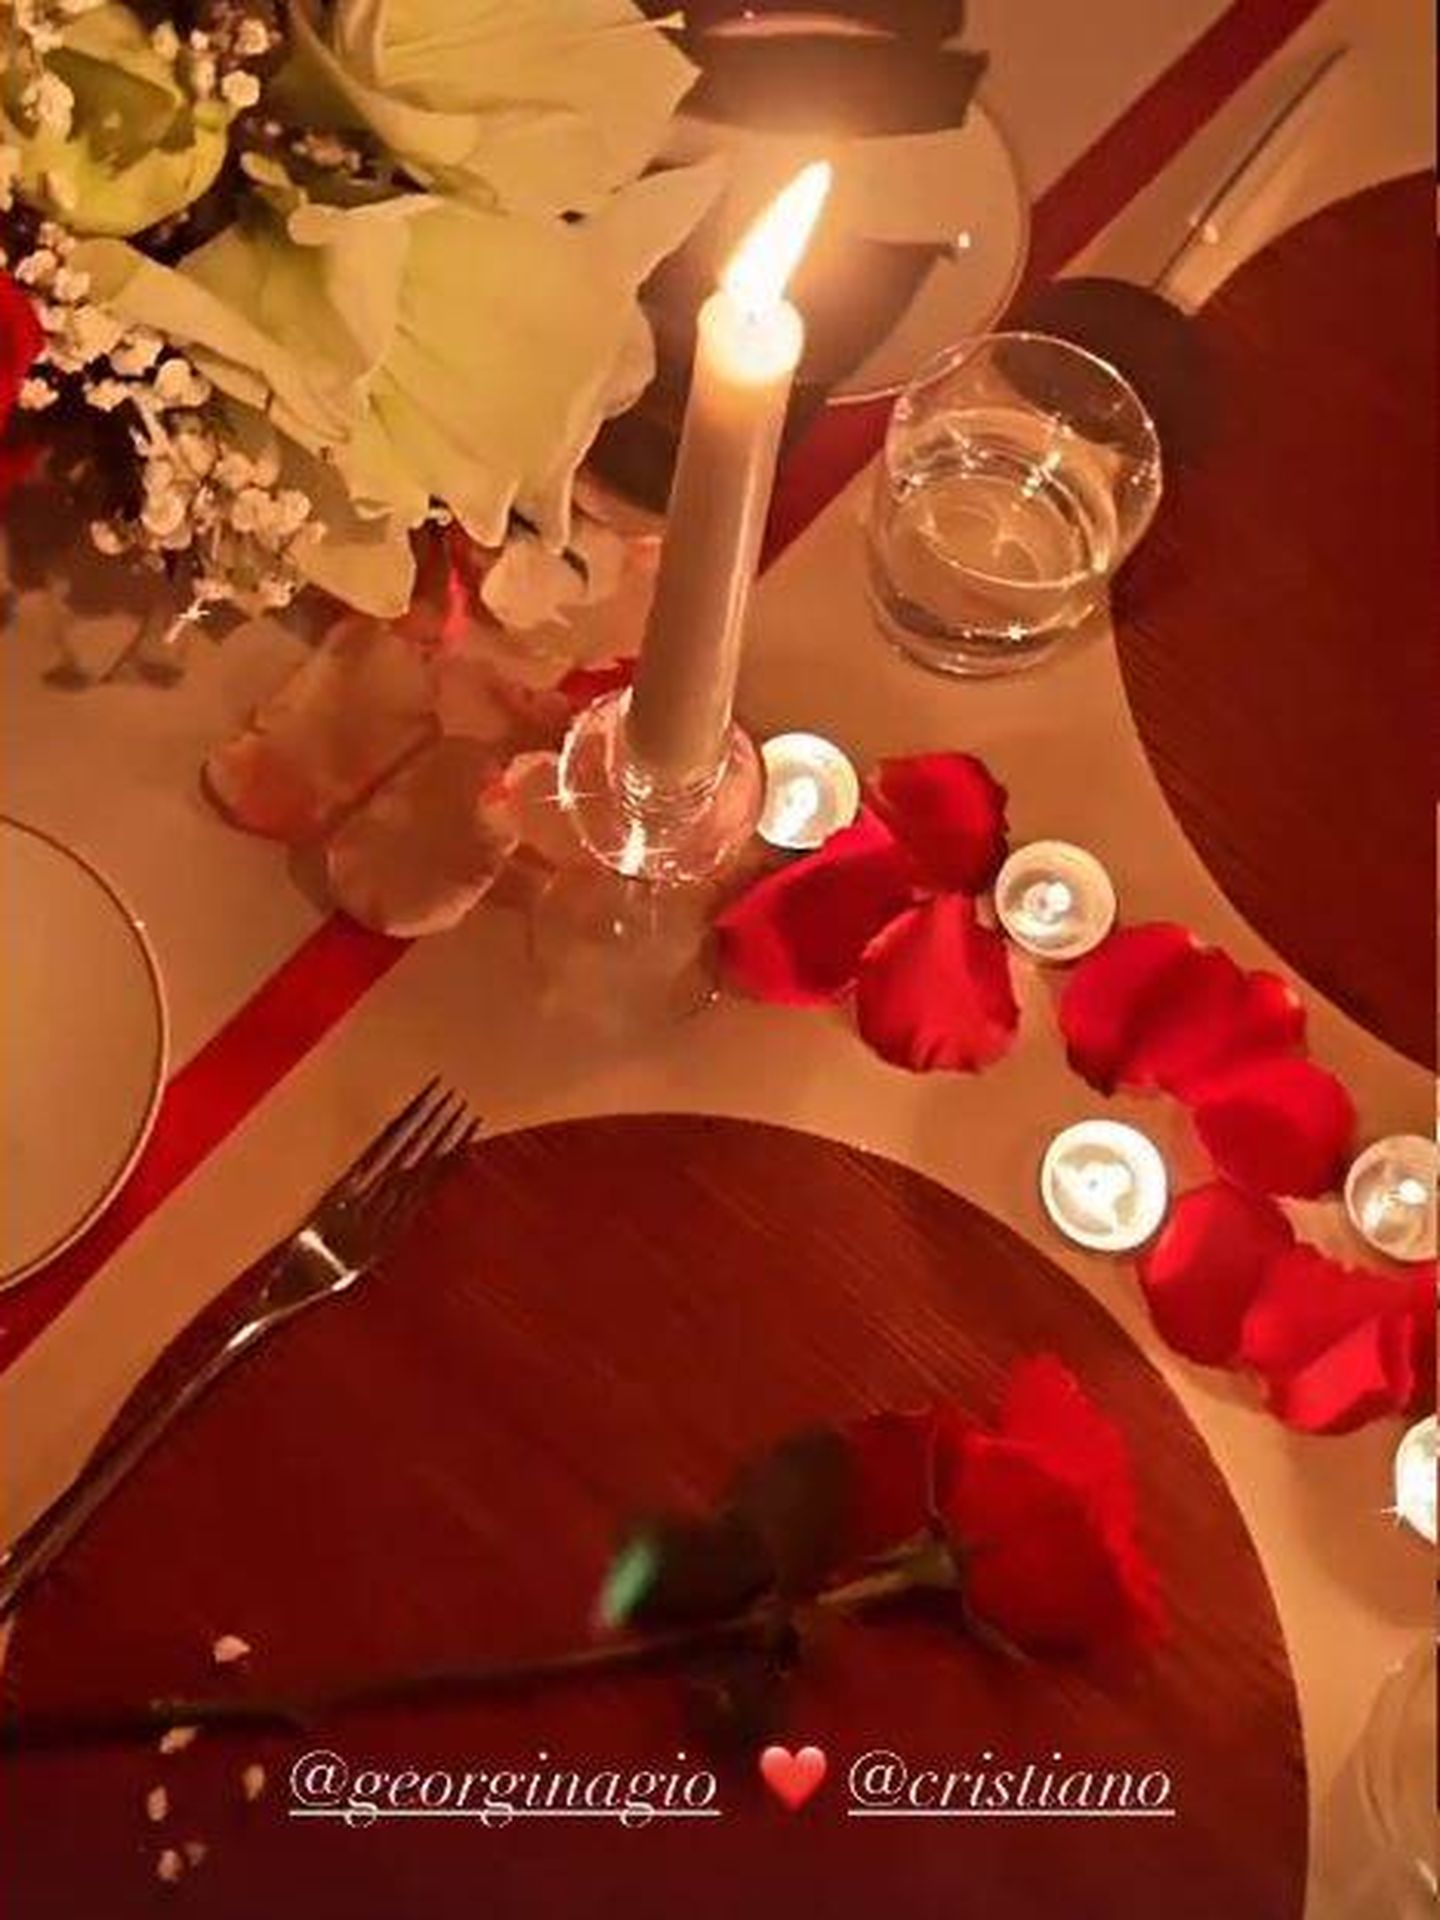 Romántica cena a la luz de las velas organizada por Cristiano. (Redes)